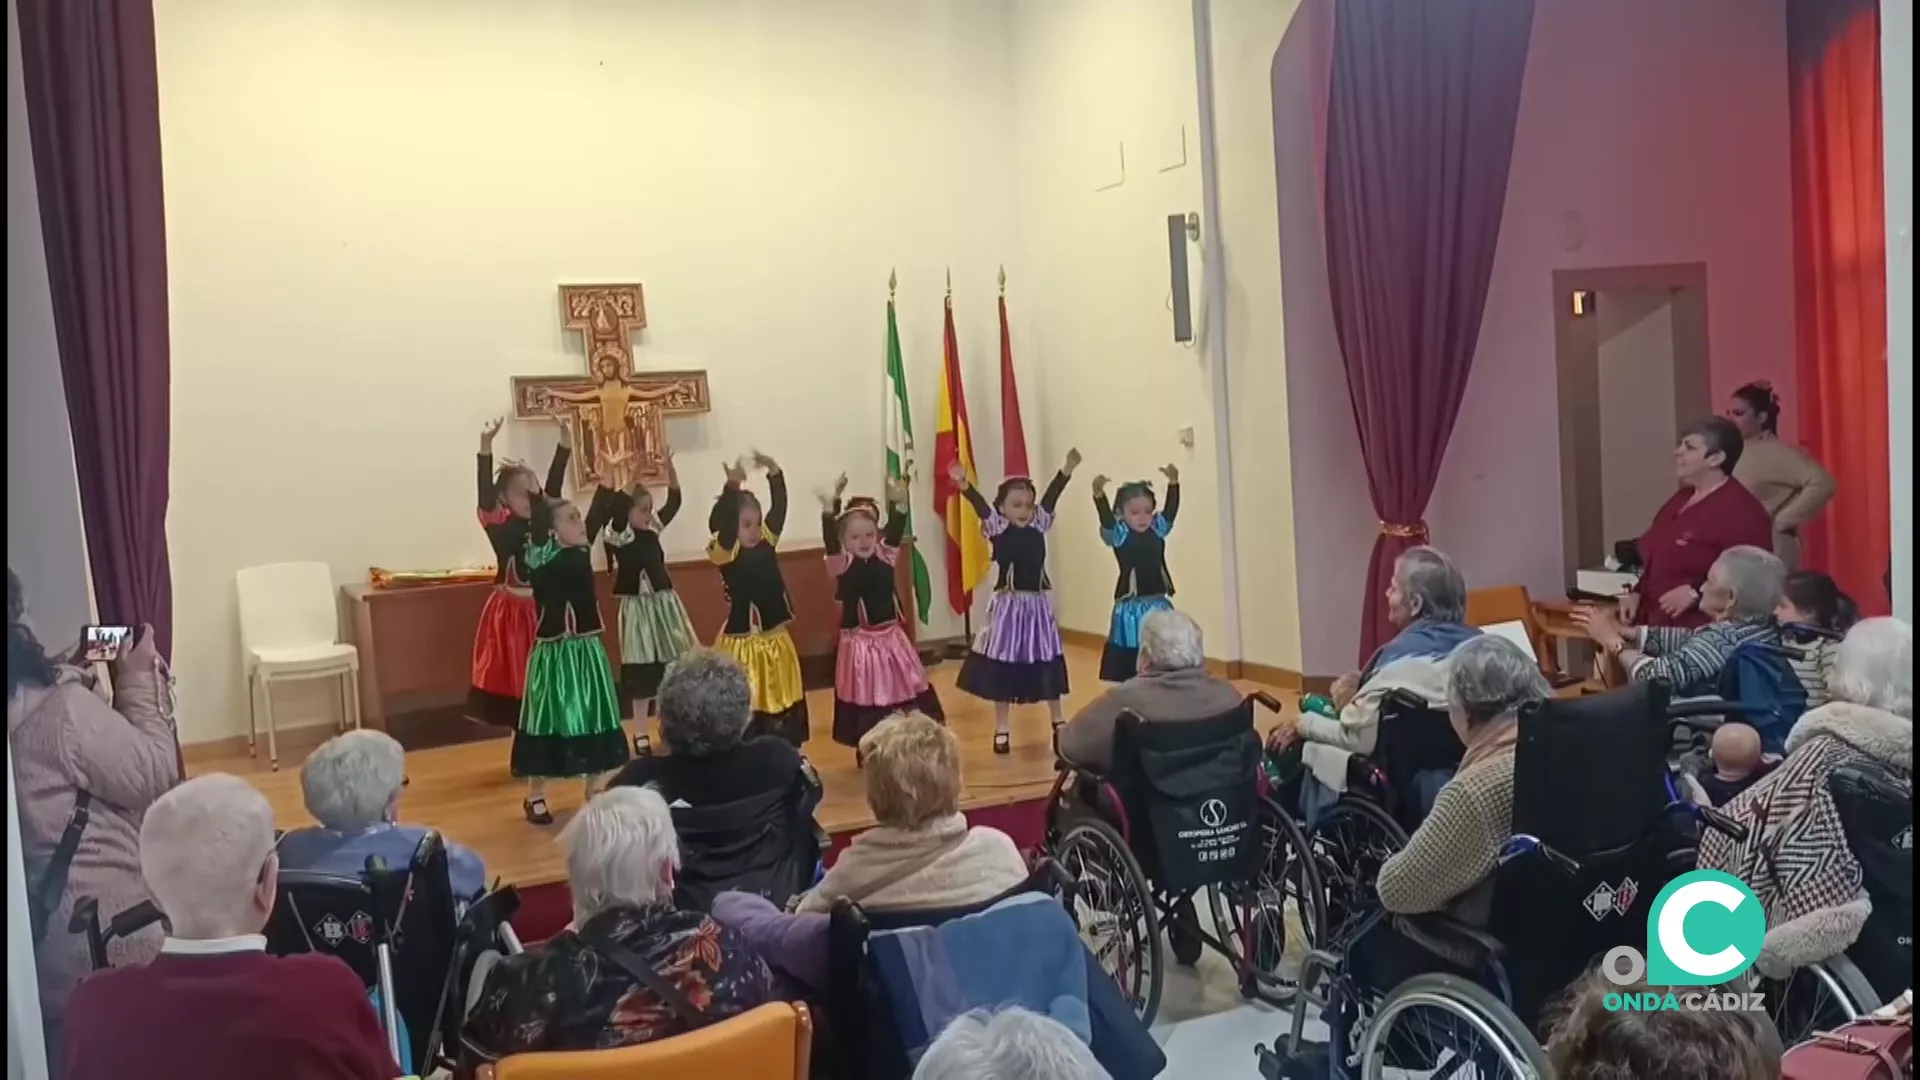 La academia de baile flamenco Raquel González deleitó a los mayores de Fragela por el 28F